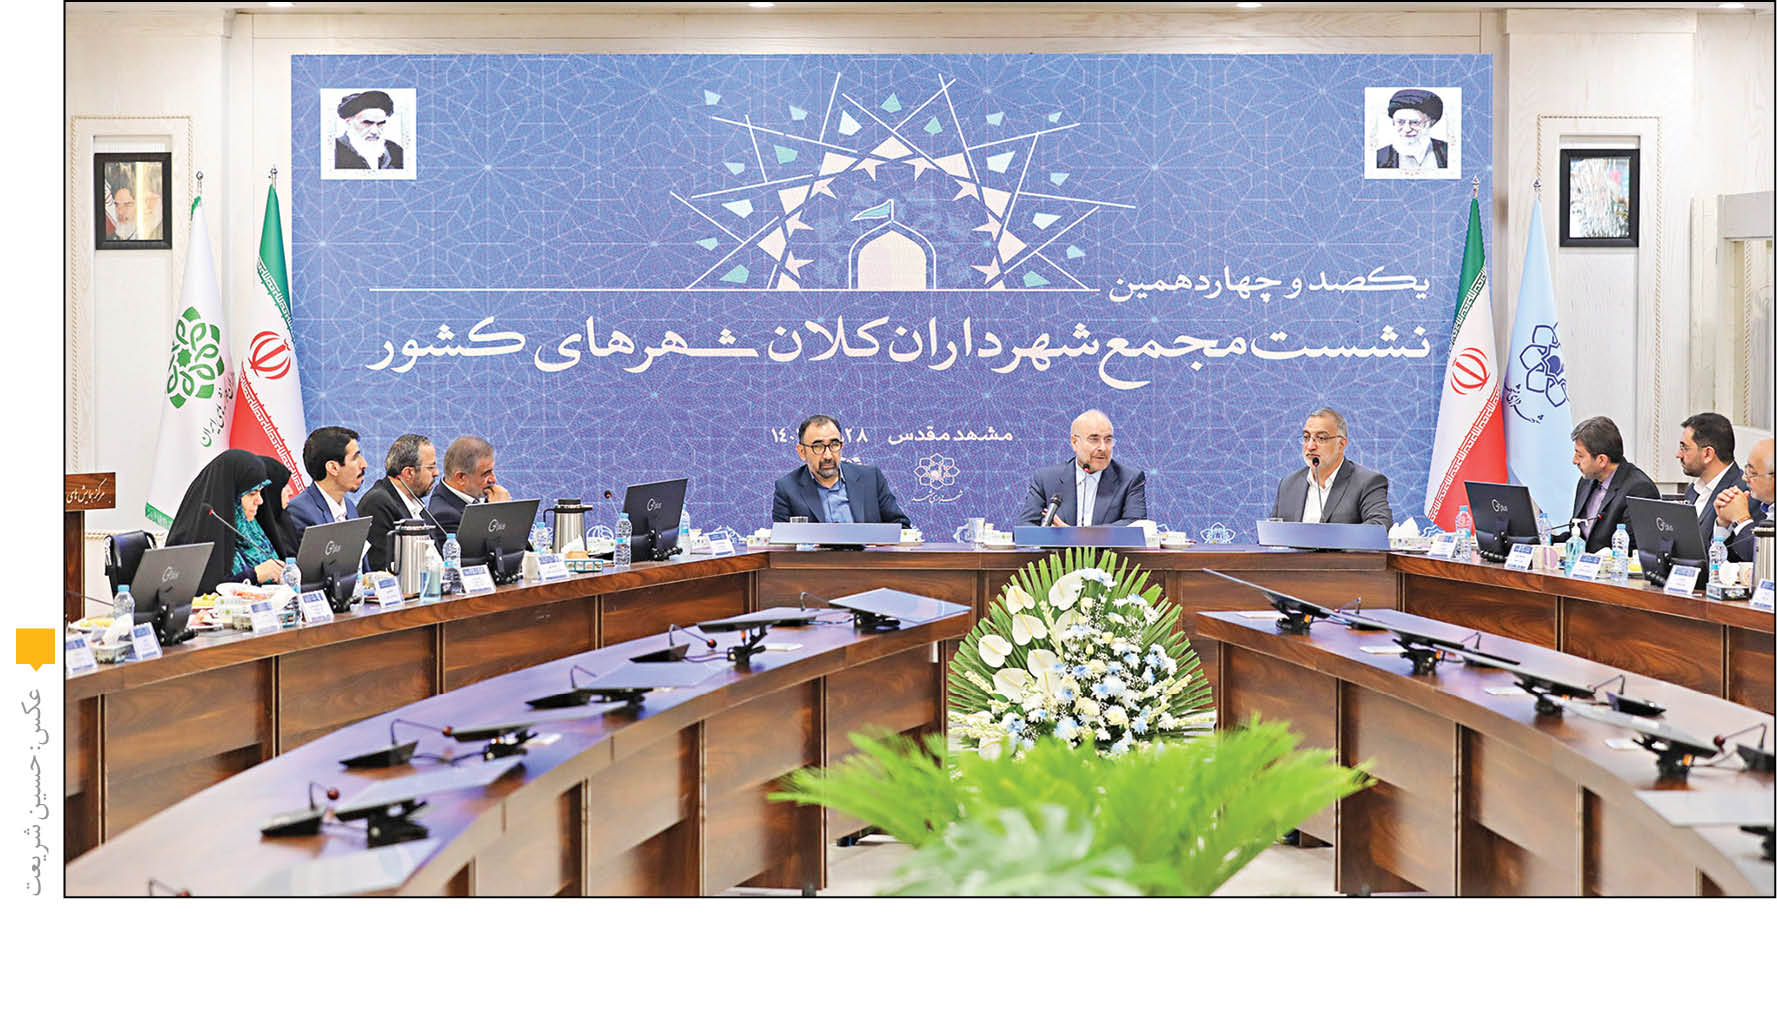 مشهد؛ میزبان یکصدوچهاردهمین نشست مجمع شهرداران کلانشهرهای کشور بود